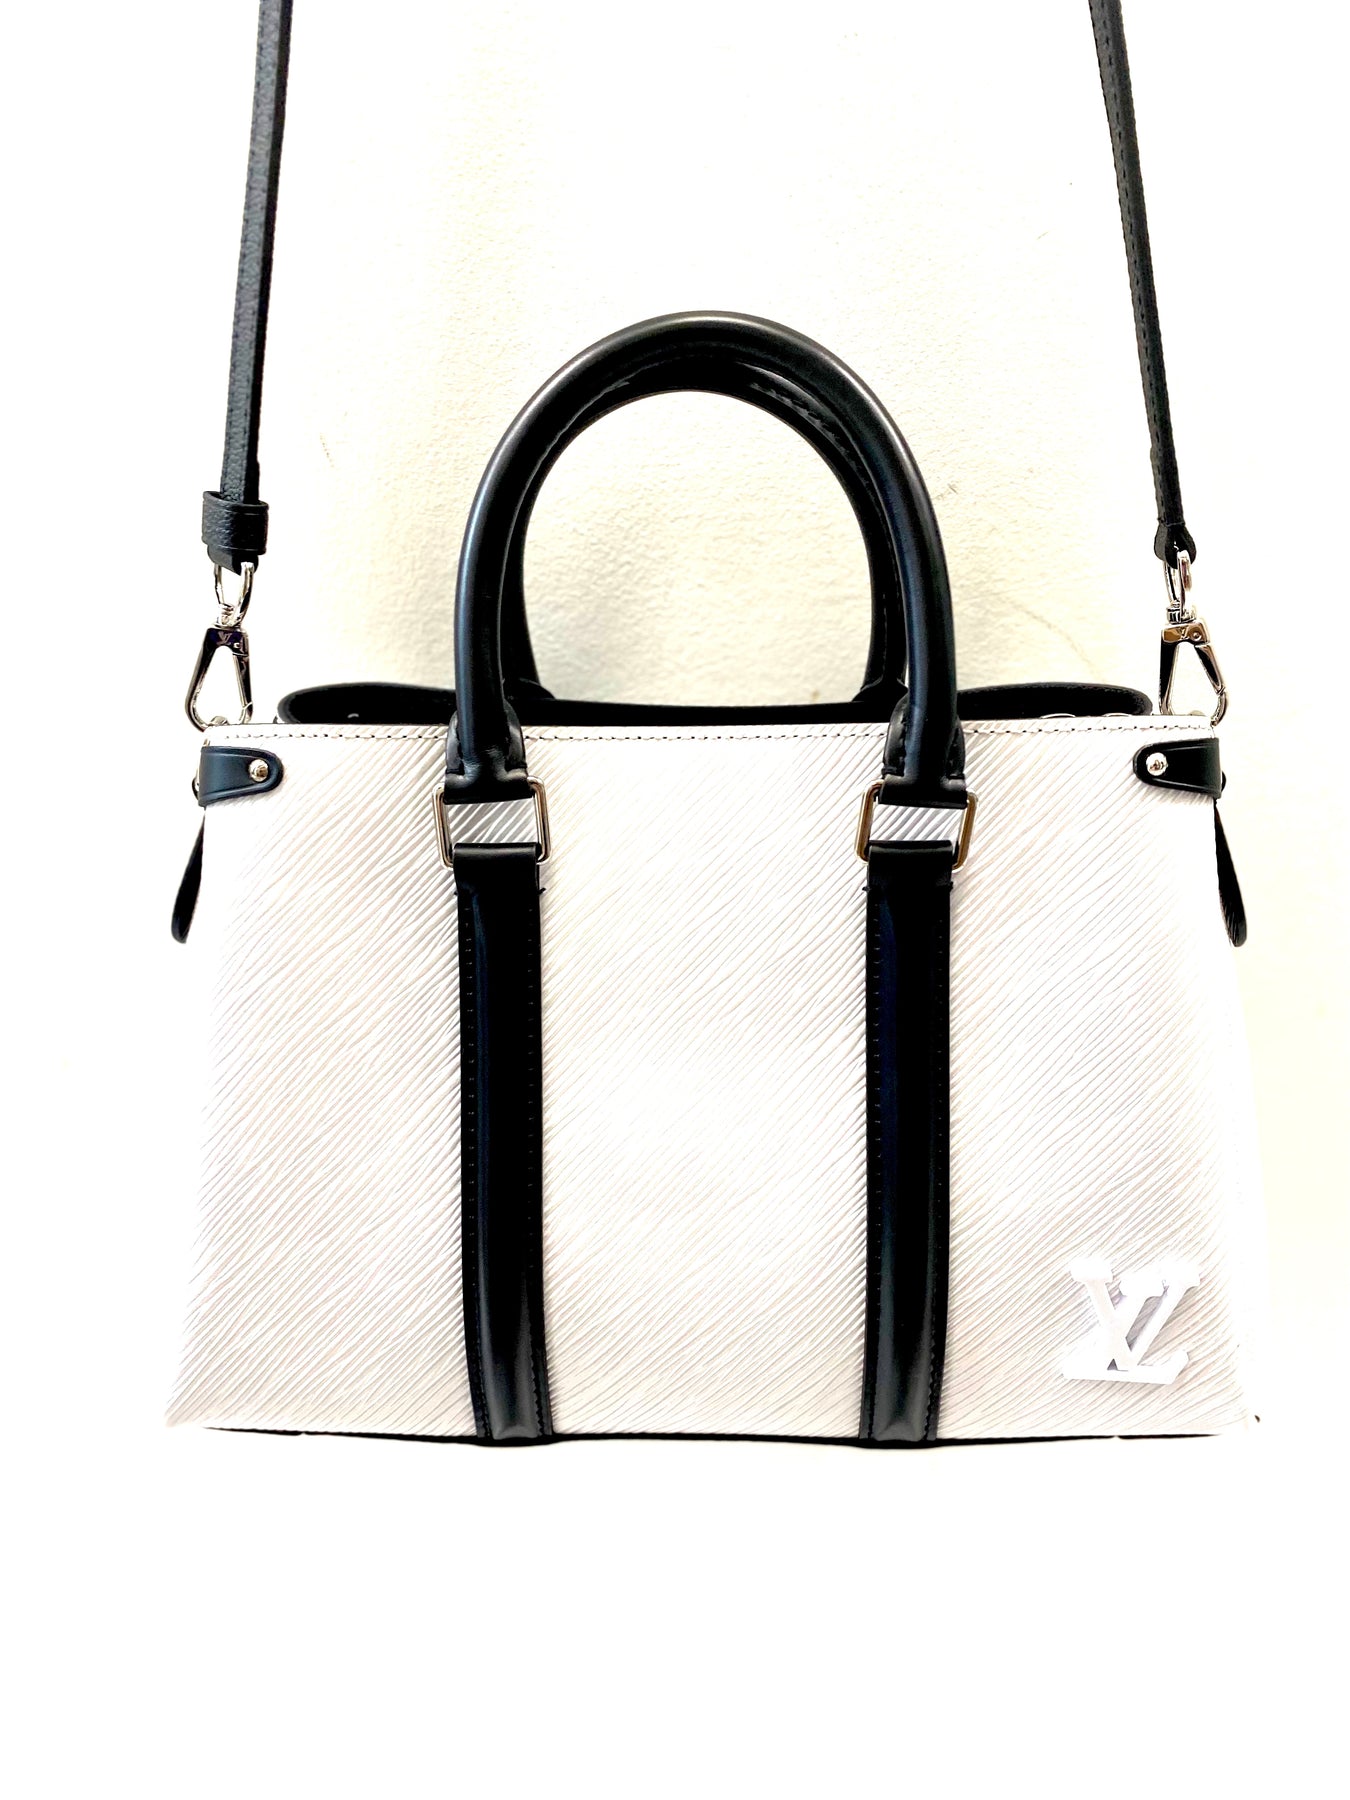 Bags, Authentic Soldout Louis Vuitton Soufflot Bb Black